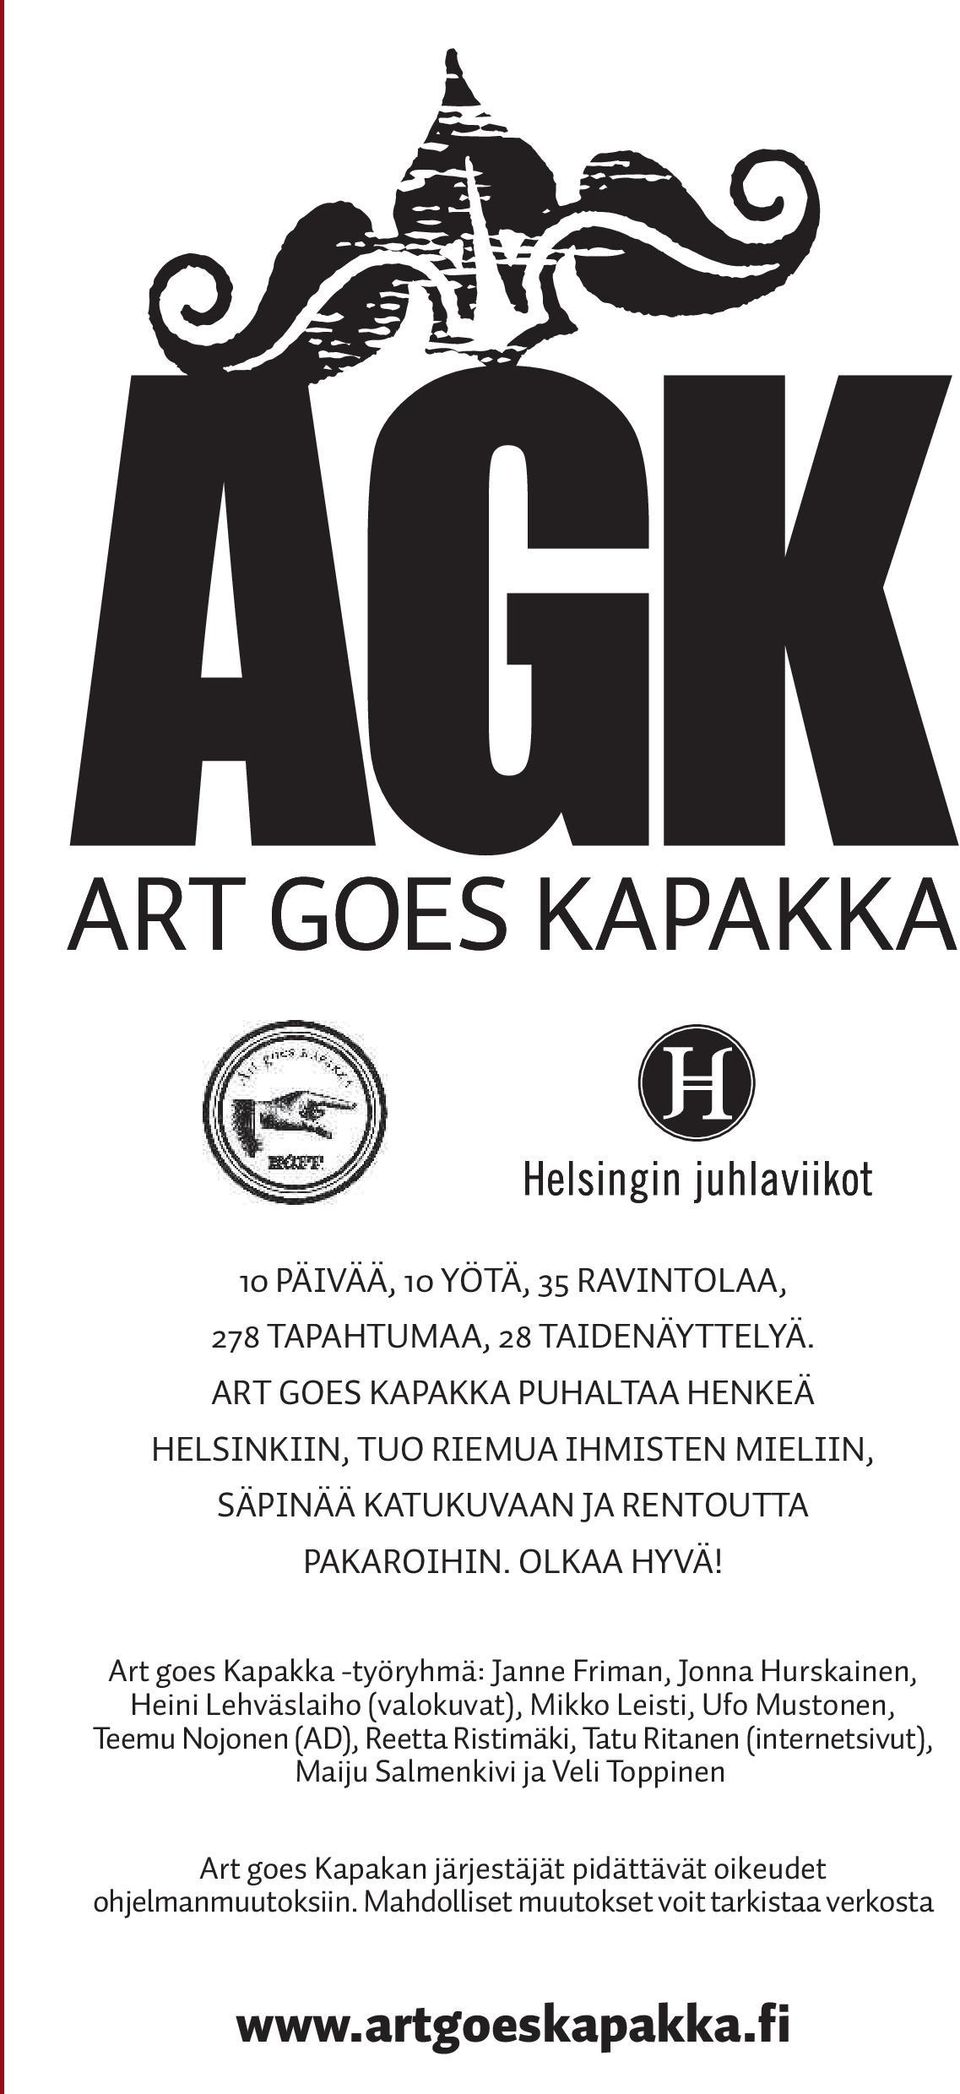 Art goes Kapakka -työryhmä: Janne Friman, Jonna Hurskainen, Heini Lehväslaiho (valokuvat), Mikko Leisti, Ufo Mustonen, Teemu Nojonen (AD),